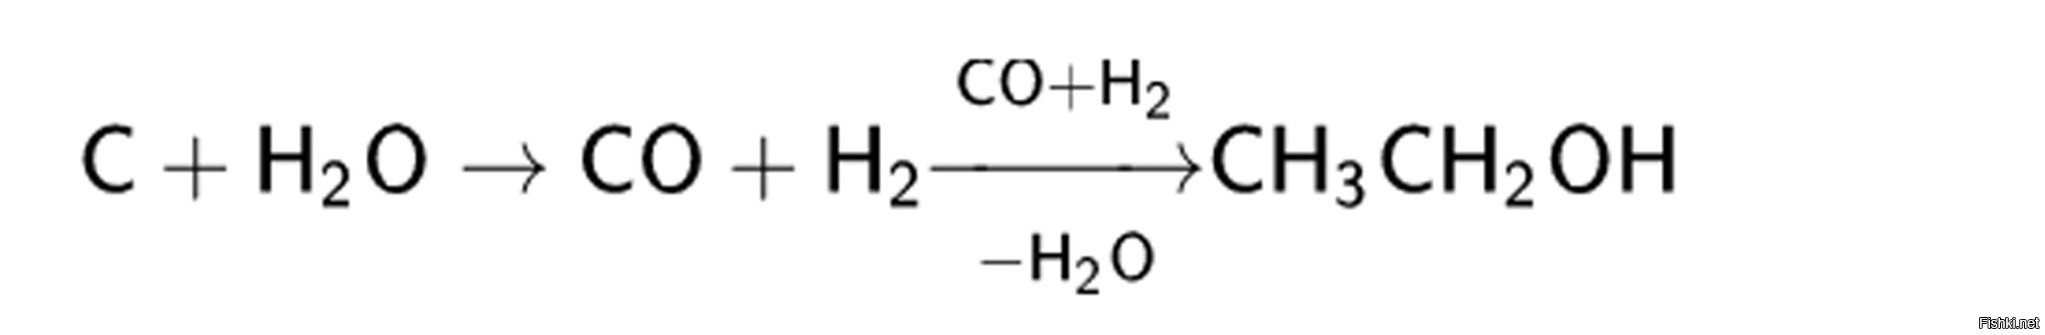 Метанол в этилен. Диэтиловый эфир из метанола. Диэтиловый эфир в оксид углерода. Диэтиловый эфир из ацетальдегида. Метанол из Синтез газа уравнение.